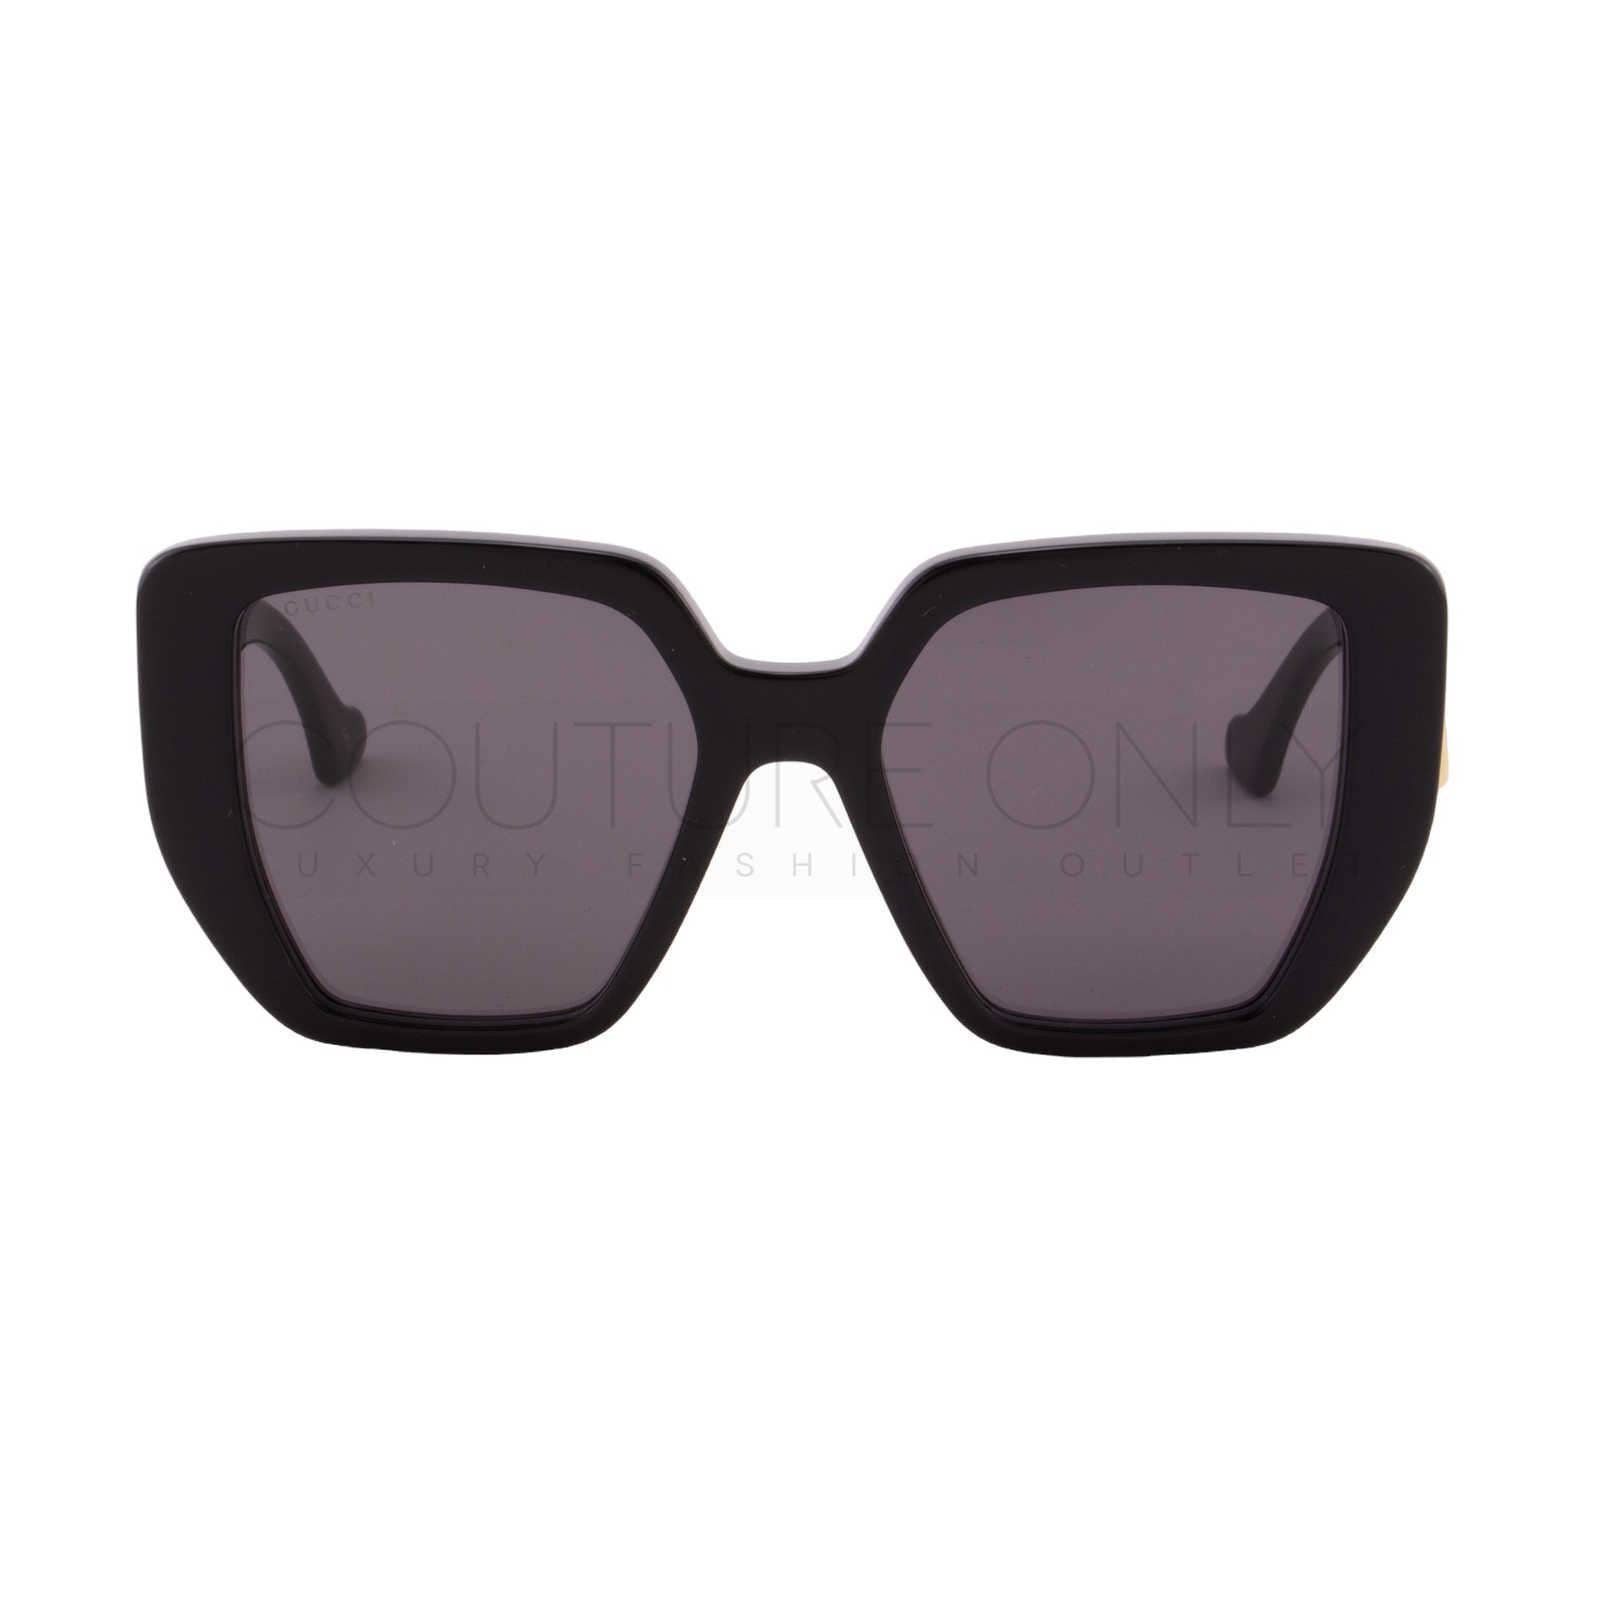 Women Black Oversized Rectangle Sunglasses GG0956S-003